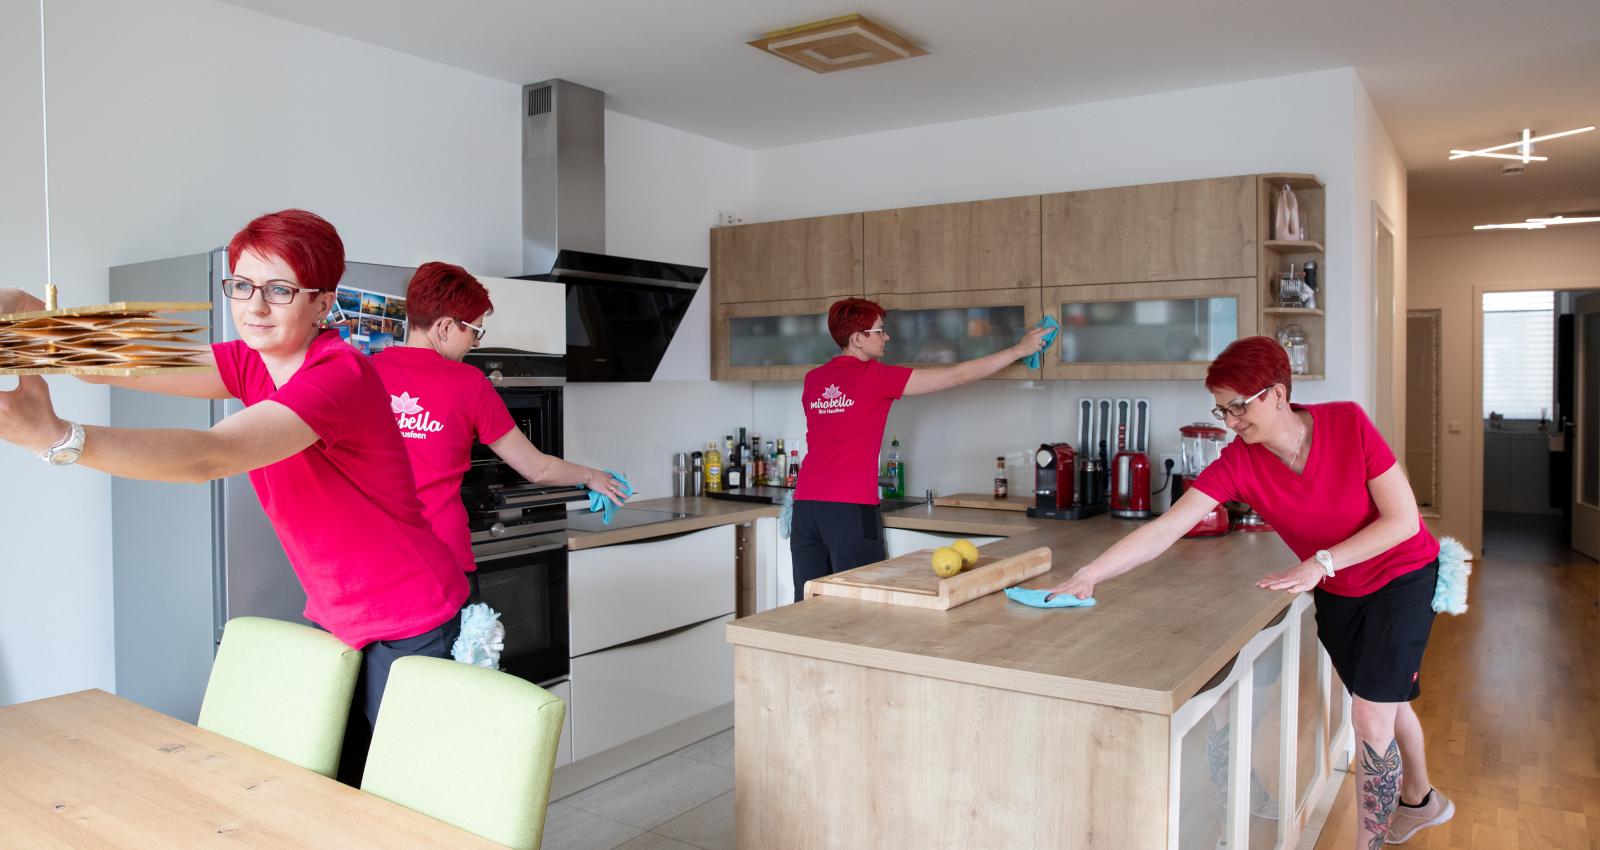 Auf diesem Bild ist vier mal dieselbe Mirabella-Hausfee bei verschiedenen Reinigungsarbeiten in einer modernen Essküche zu sehen - sie trägt ein pinkfarbenes T-Shirt.